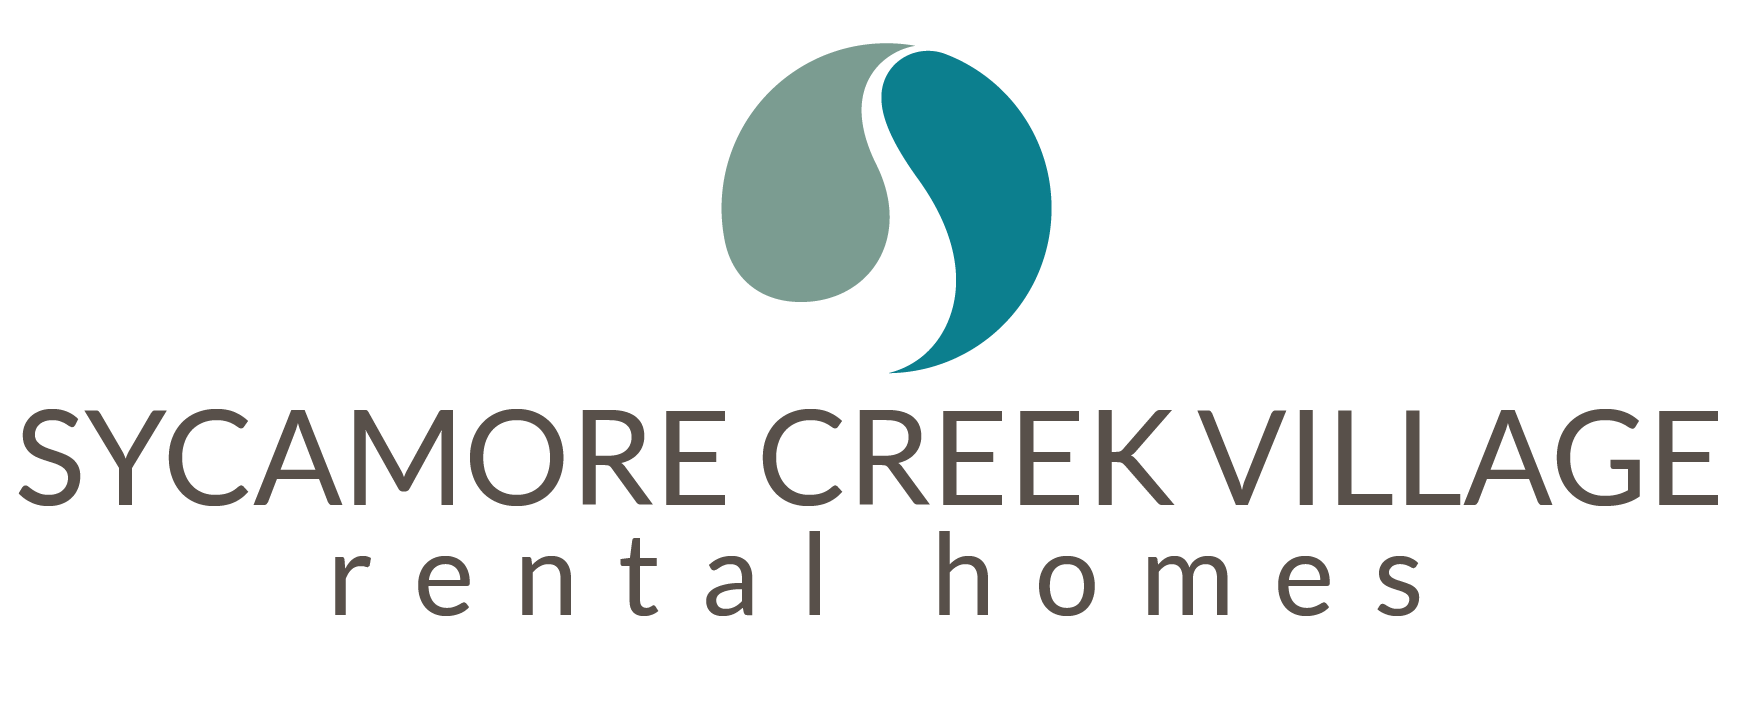 Sycamore Creek Village Rental Homes Logo